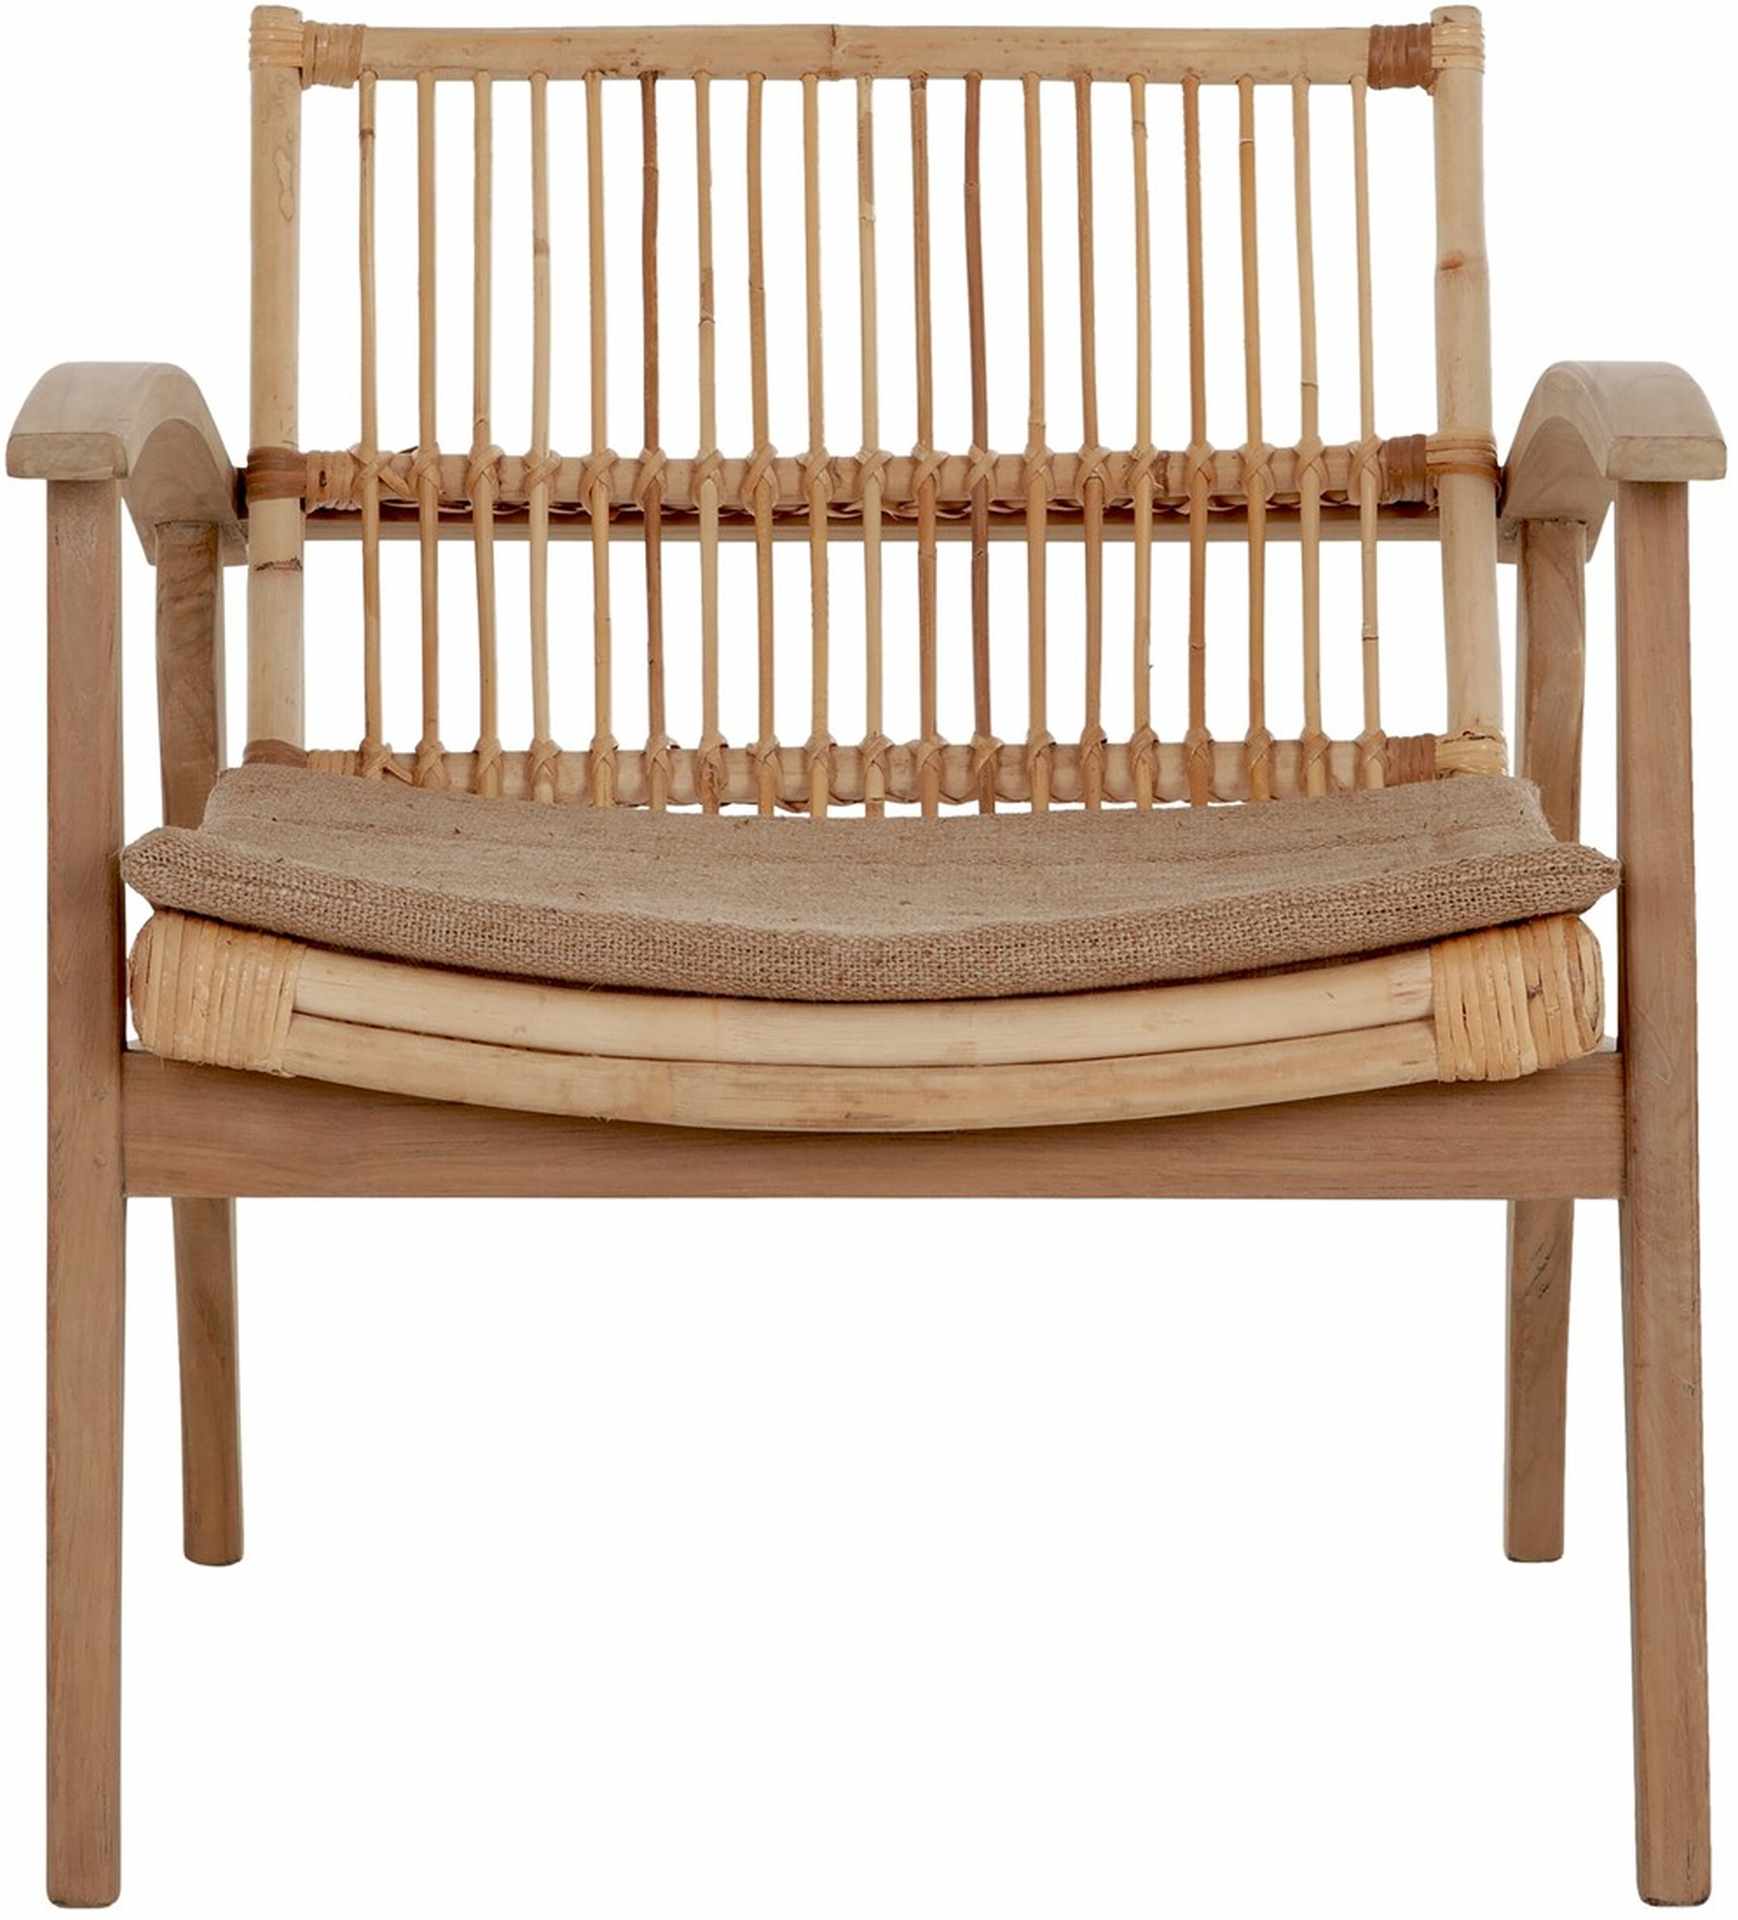 Der Loungesessel Marvin überzeugt mit seinem modernen Design aber auch mit seinem Boho Stil. Gefertigt wurde der Sessel aus Teakholz, welches einen natürlichen Farbton besitzt. Die Sitz- und Rückenfläche sind aus Rattan, welche ebenfalls einen natürlichen